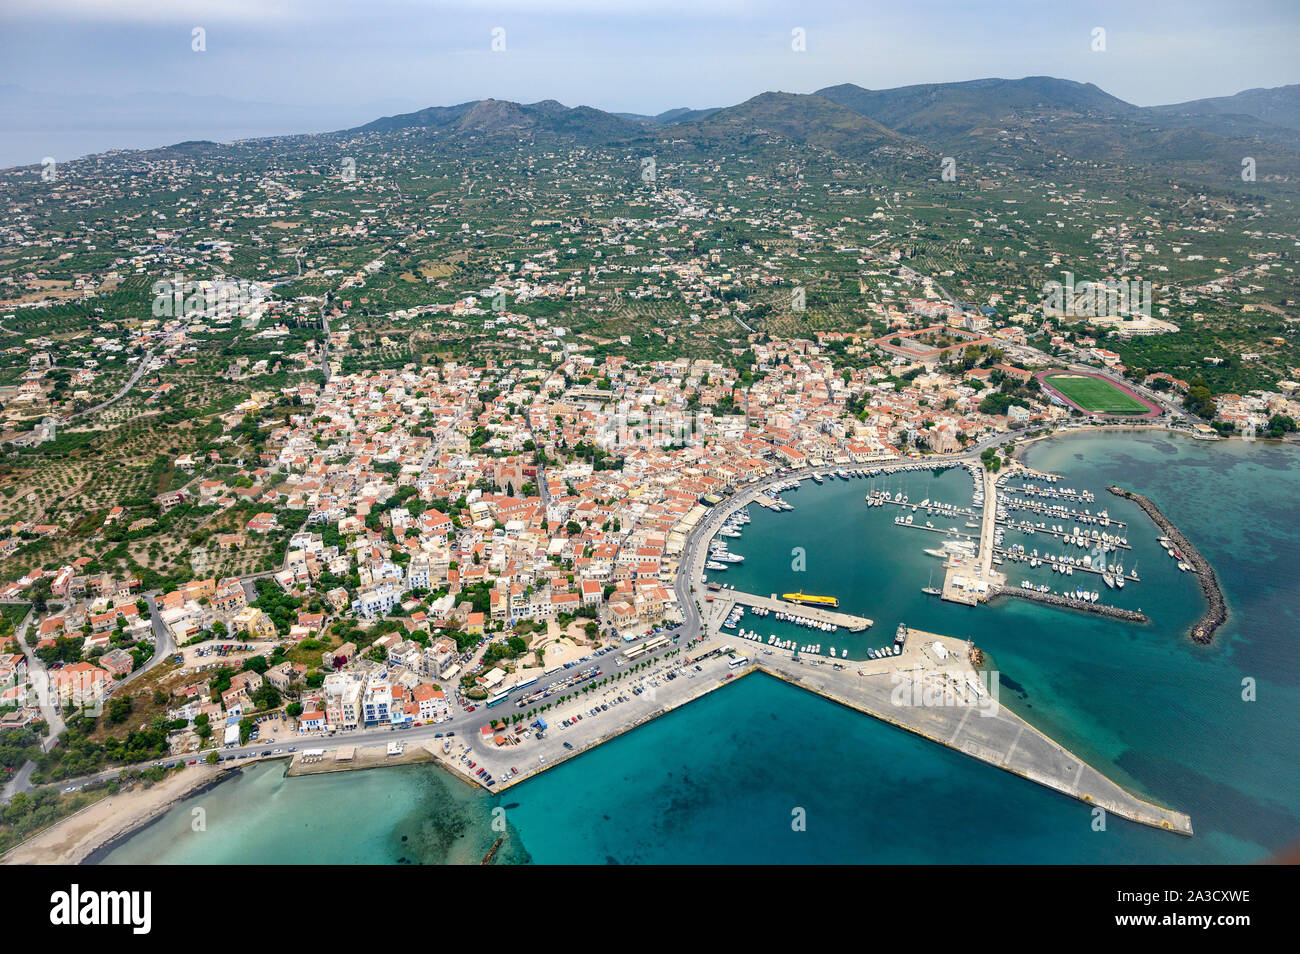 Vista aerea della città e del porto di Aegina, sull'isola di Egina nel golfo Saronico vicino a Atene, Grecia Foto Stock